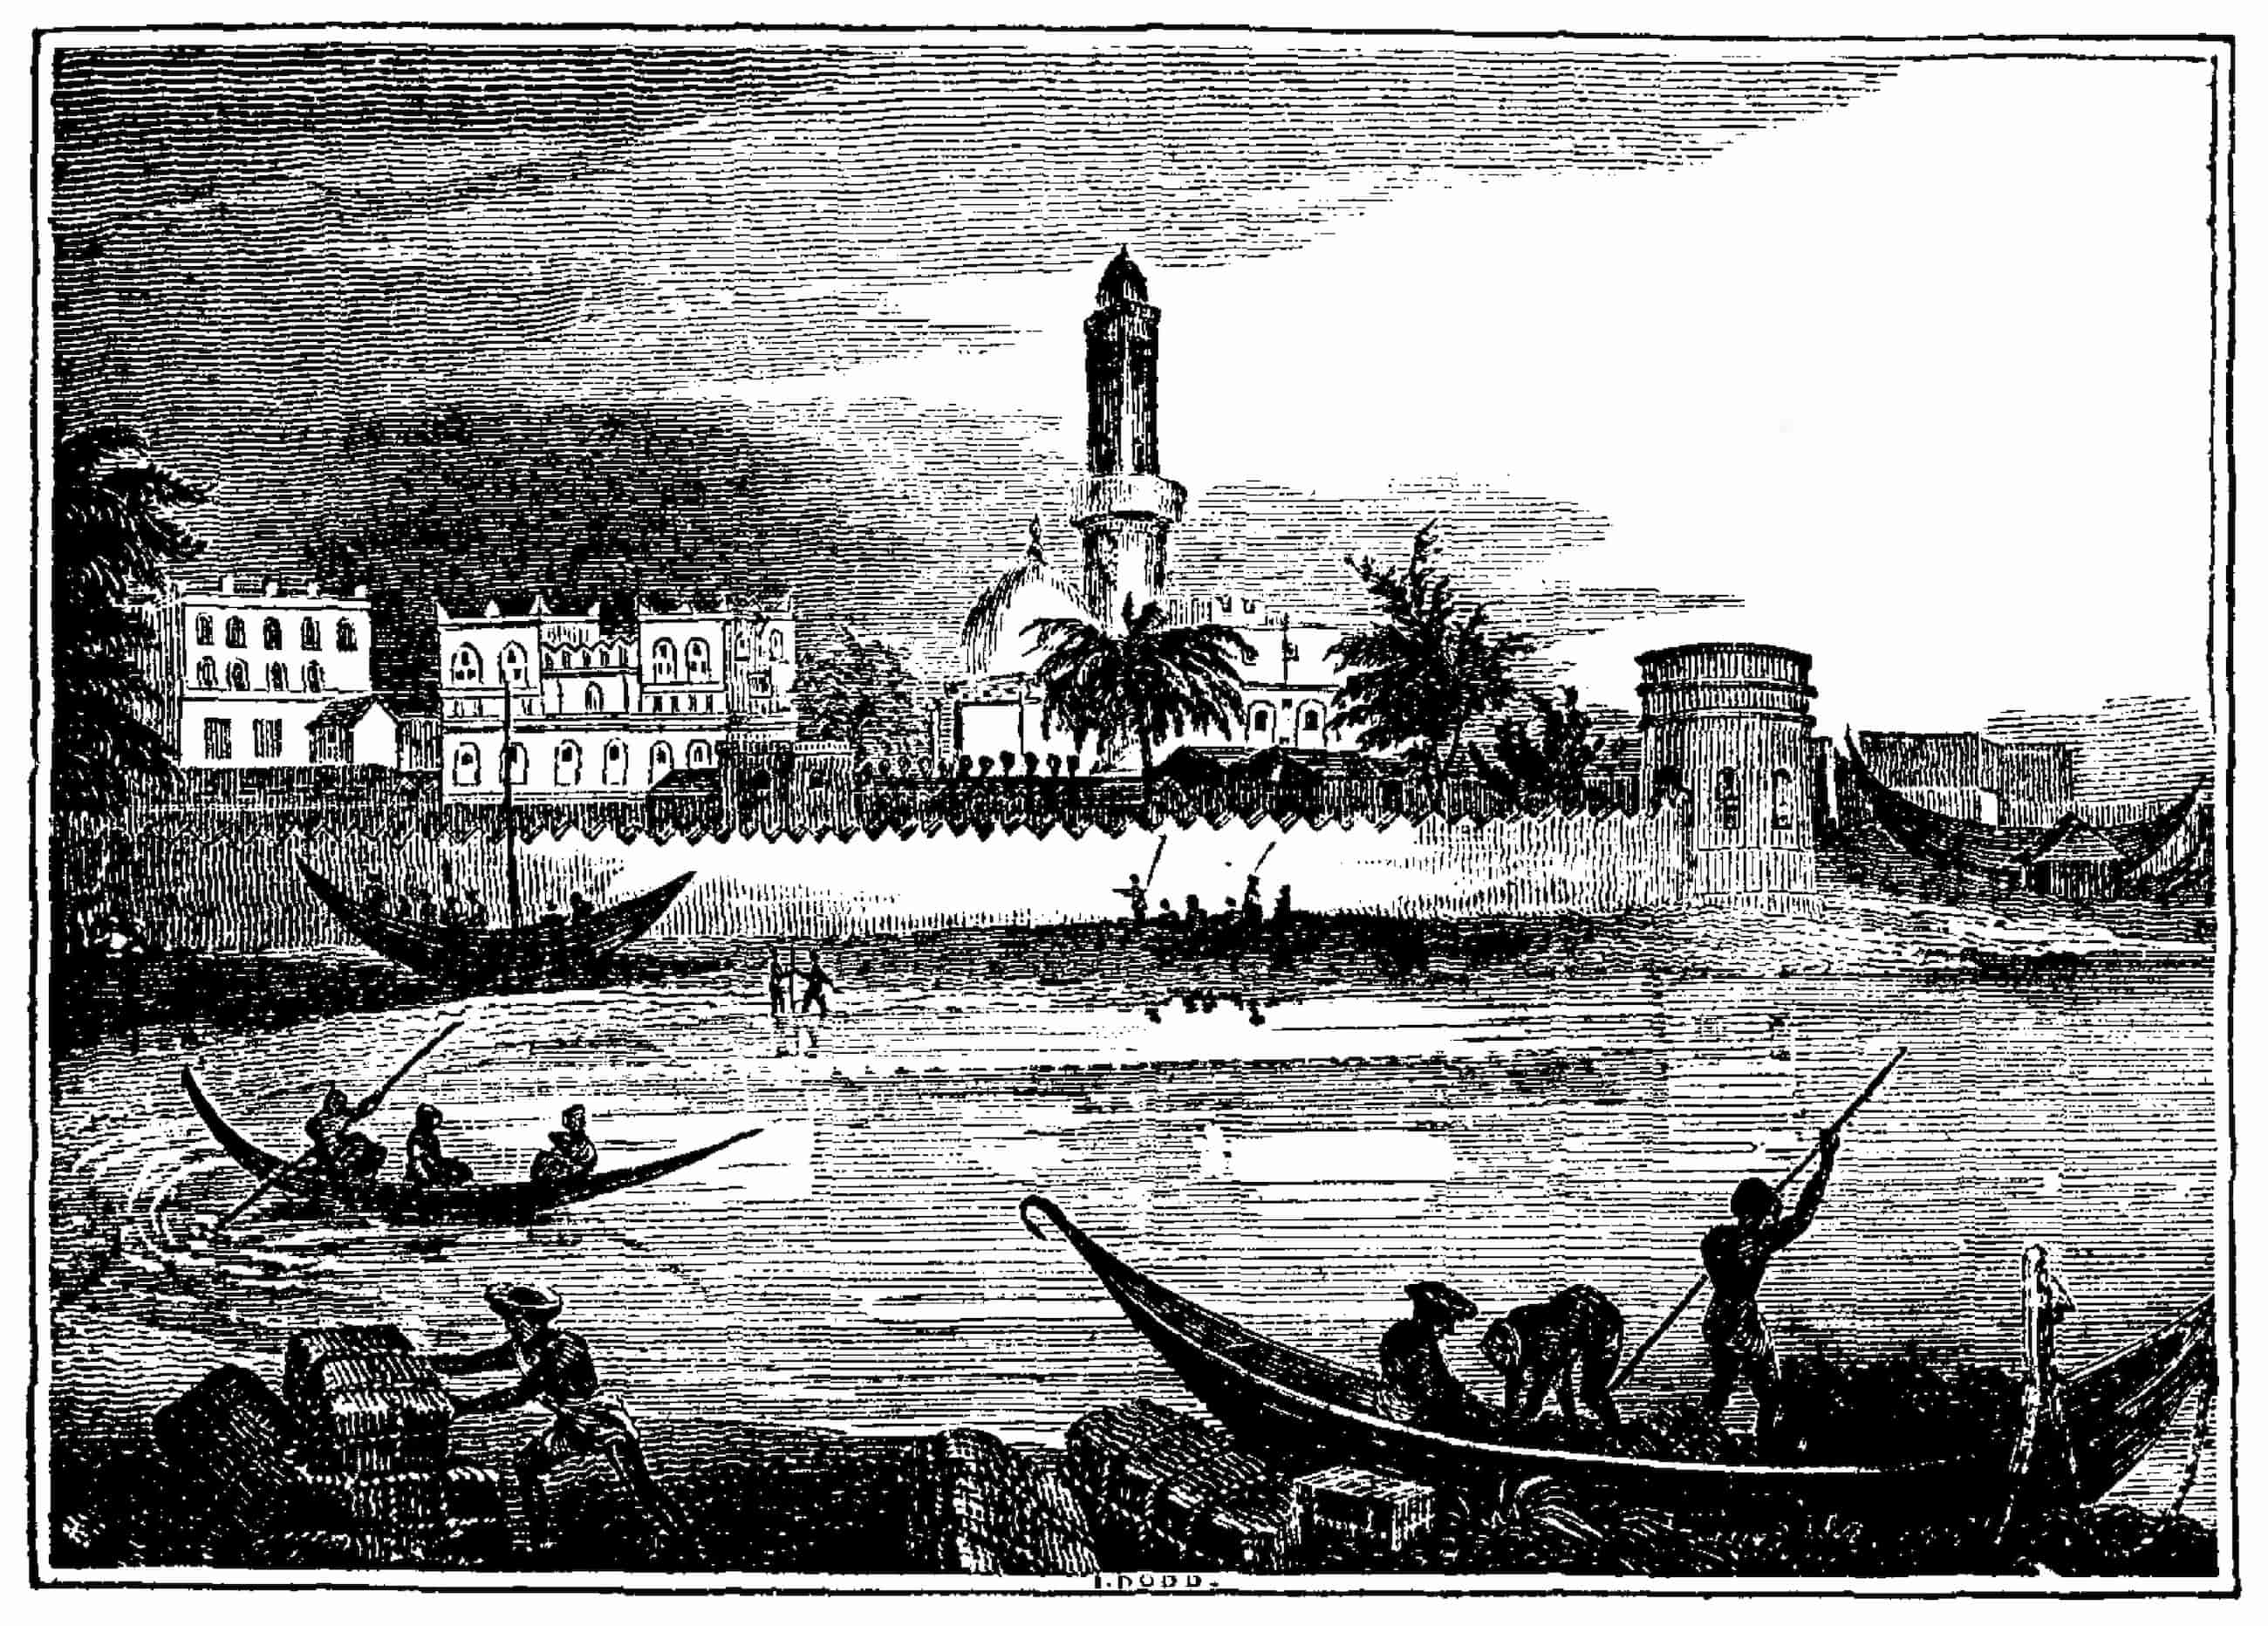 Een illustratie van de haven van Mocha, kleine boten bewegen in het water voor een ommuurde nederzetting.